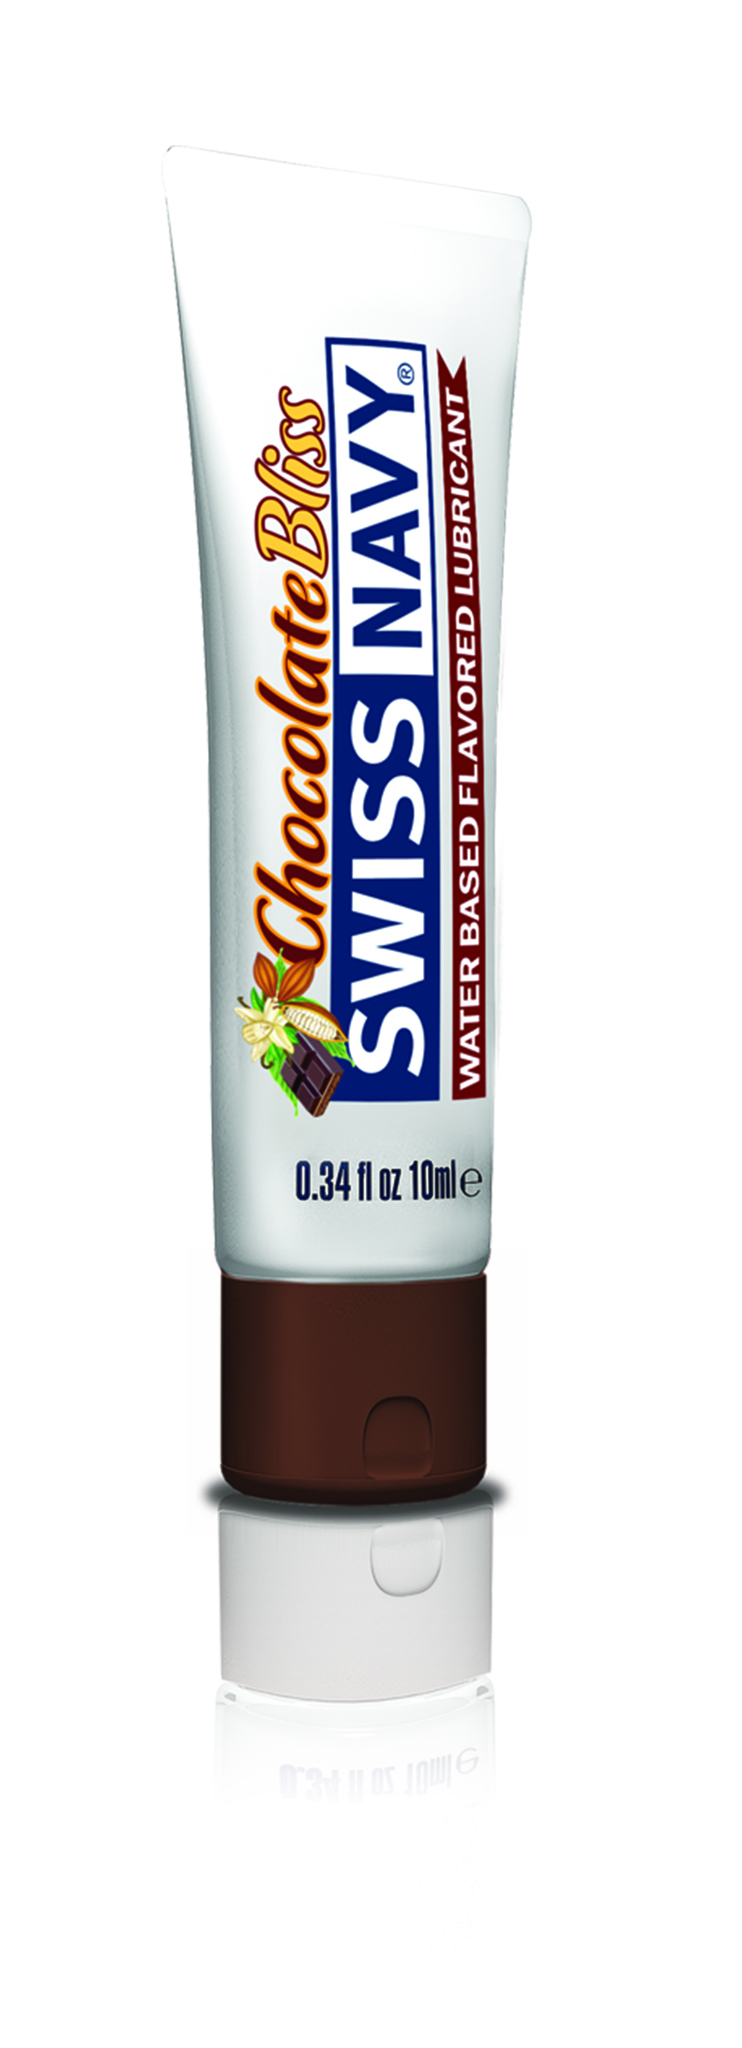 Лубрикант с ароматом шоколада Chocolate Bliss Flavored Lubricant 10ml фото